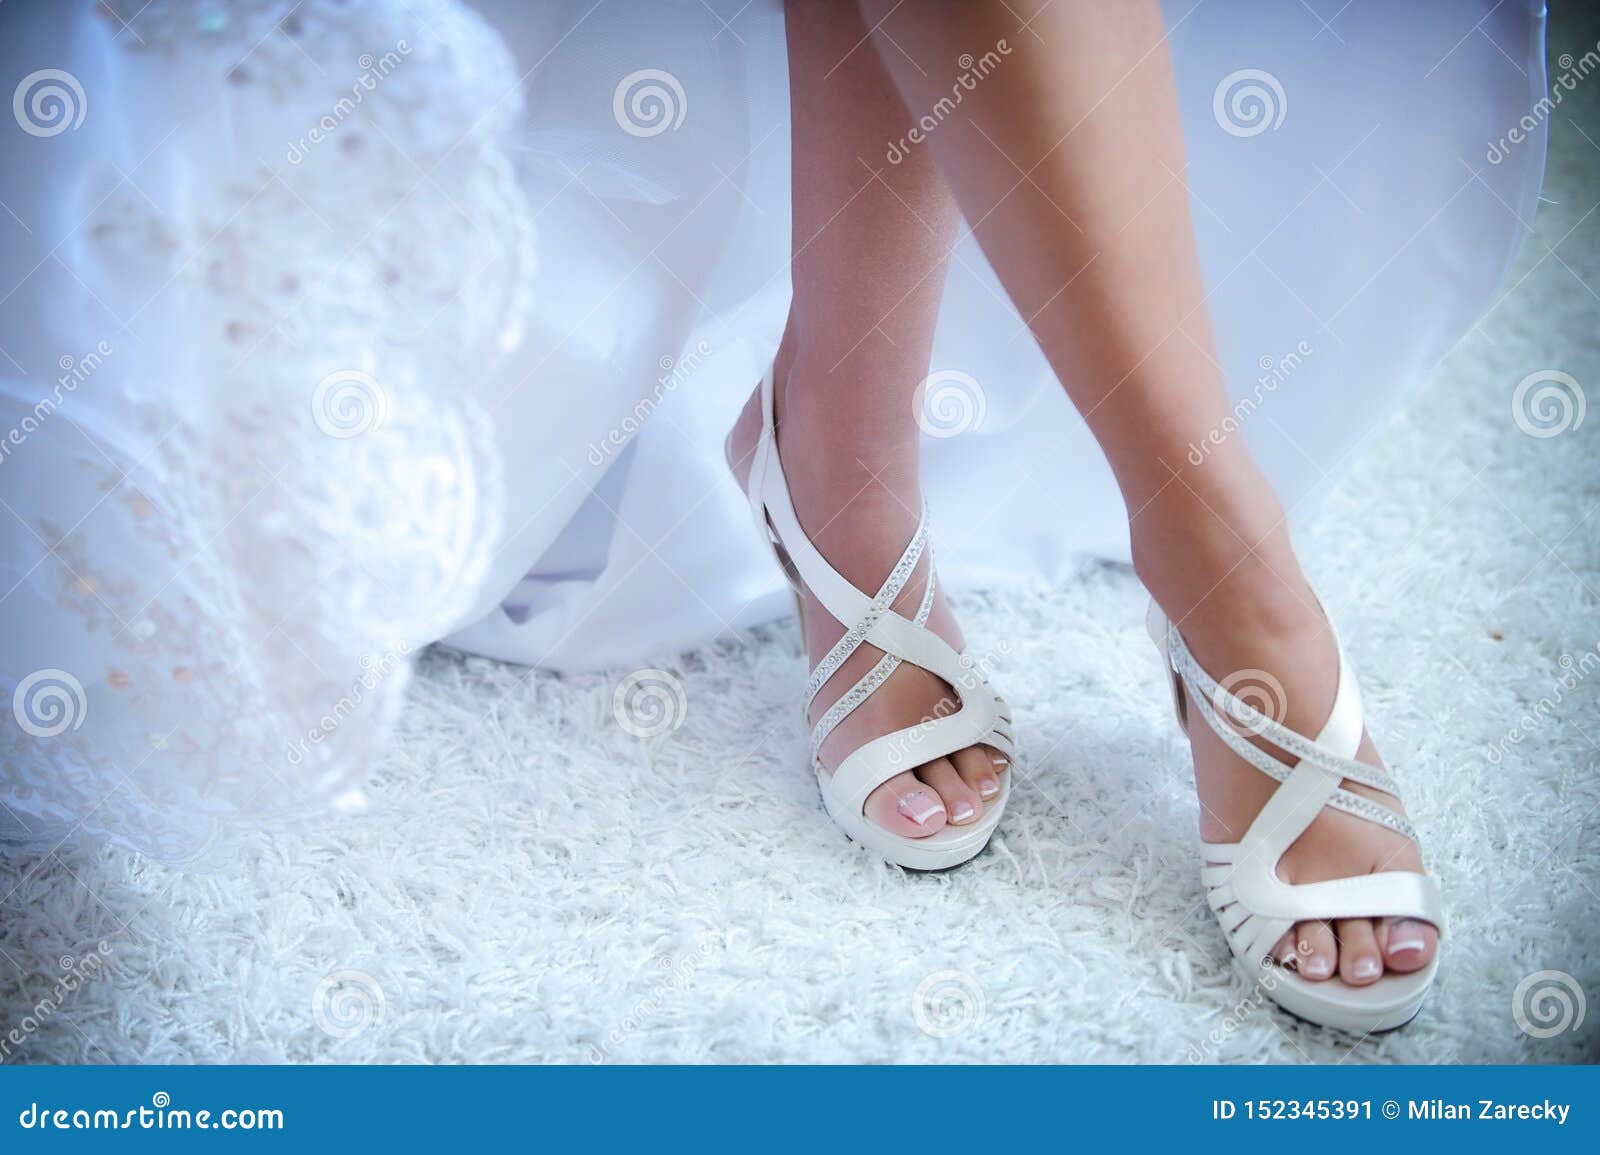 Mooie Huwelijks Witte Schoenen Onder De Rok Stock Afbeelding - Image of ...